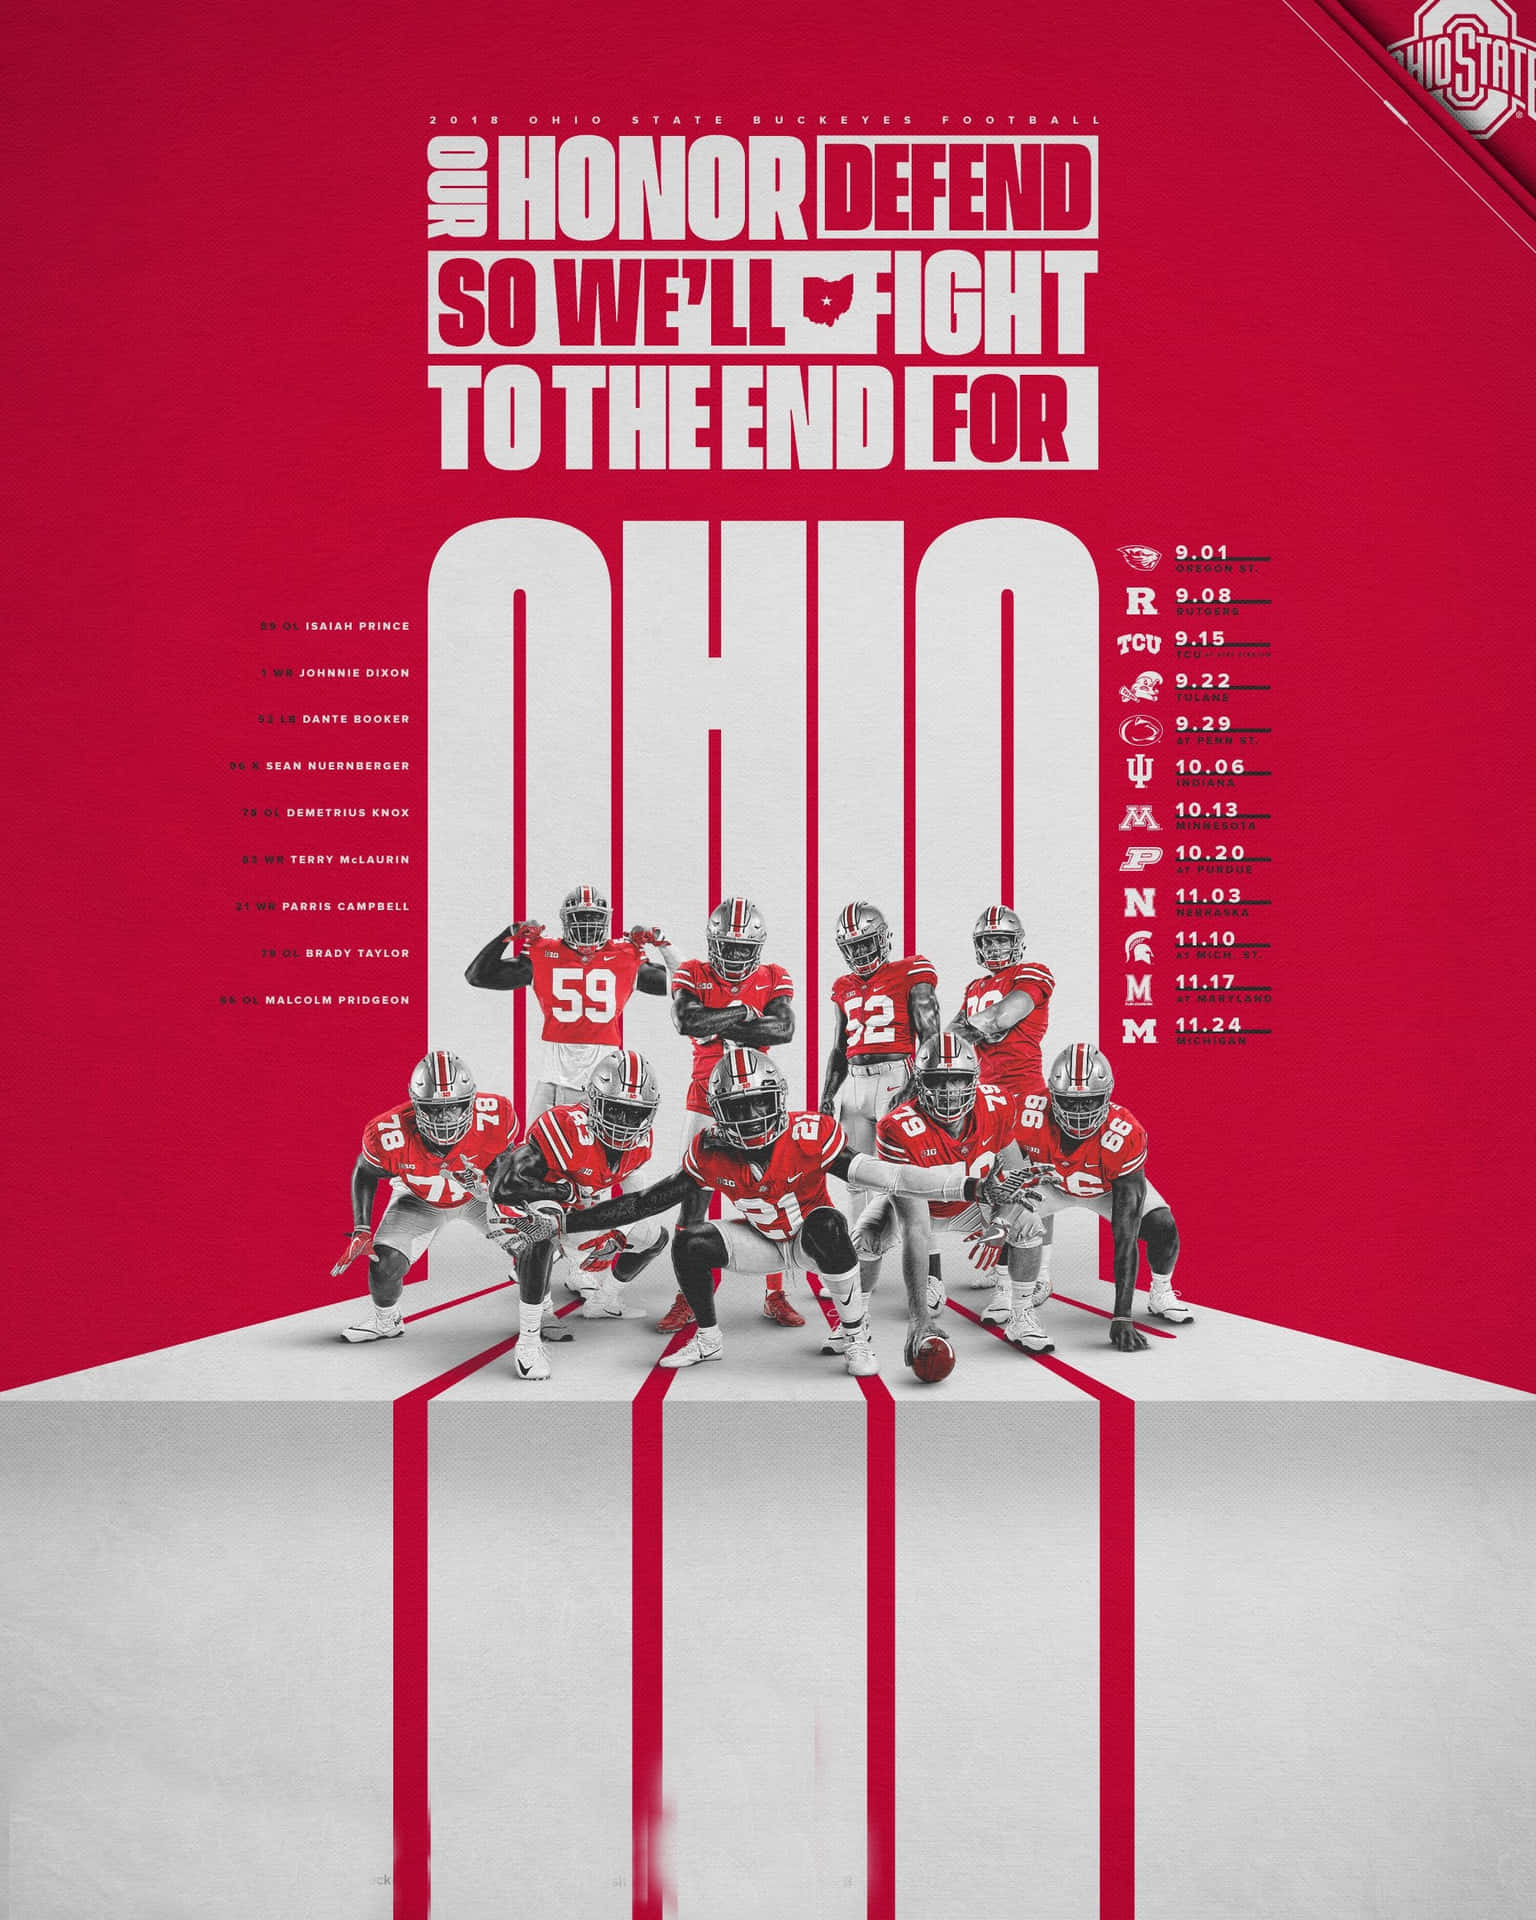 Få dit Ohio State Football Game Day Gear klar til at se Buckeyes spille! Wallpaper